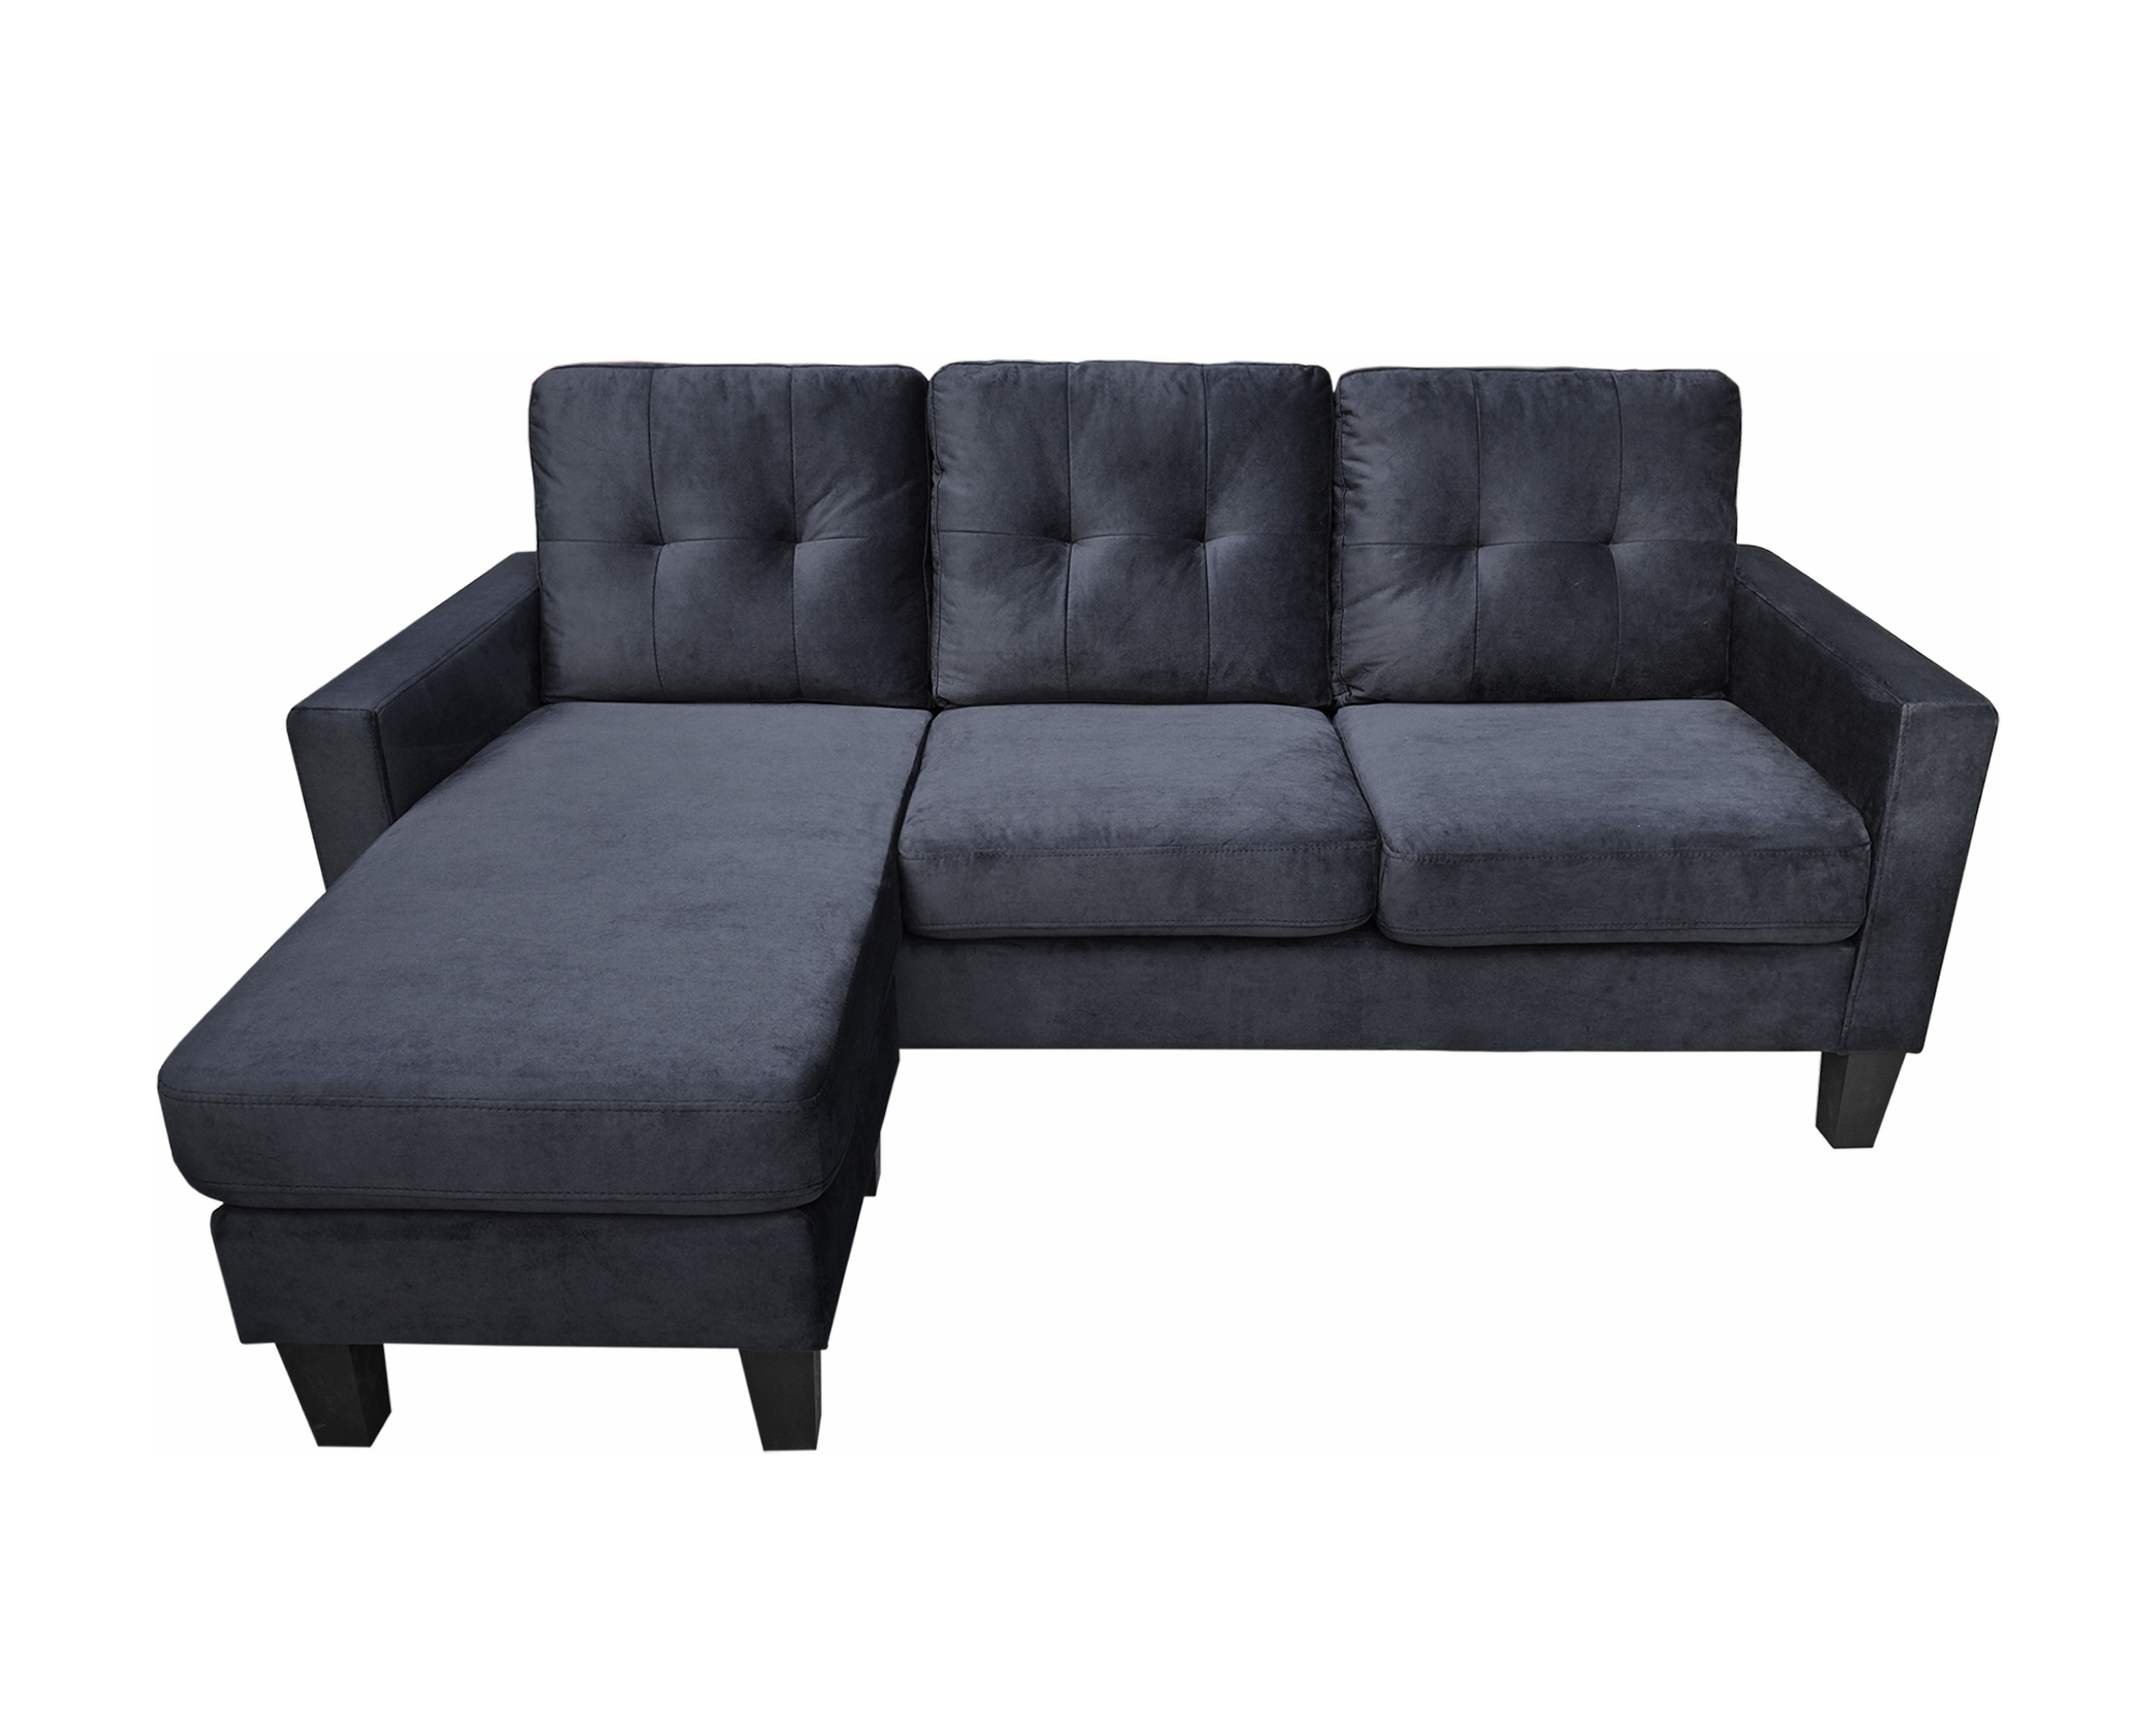 Everett - Velvet Reversible Sectional Sofa Chaise